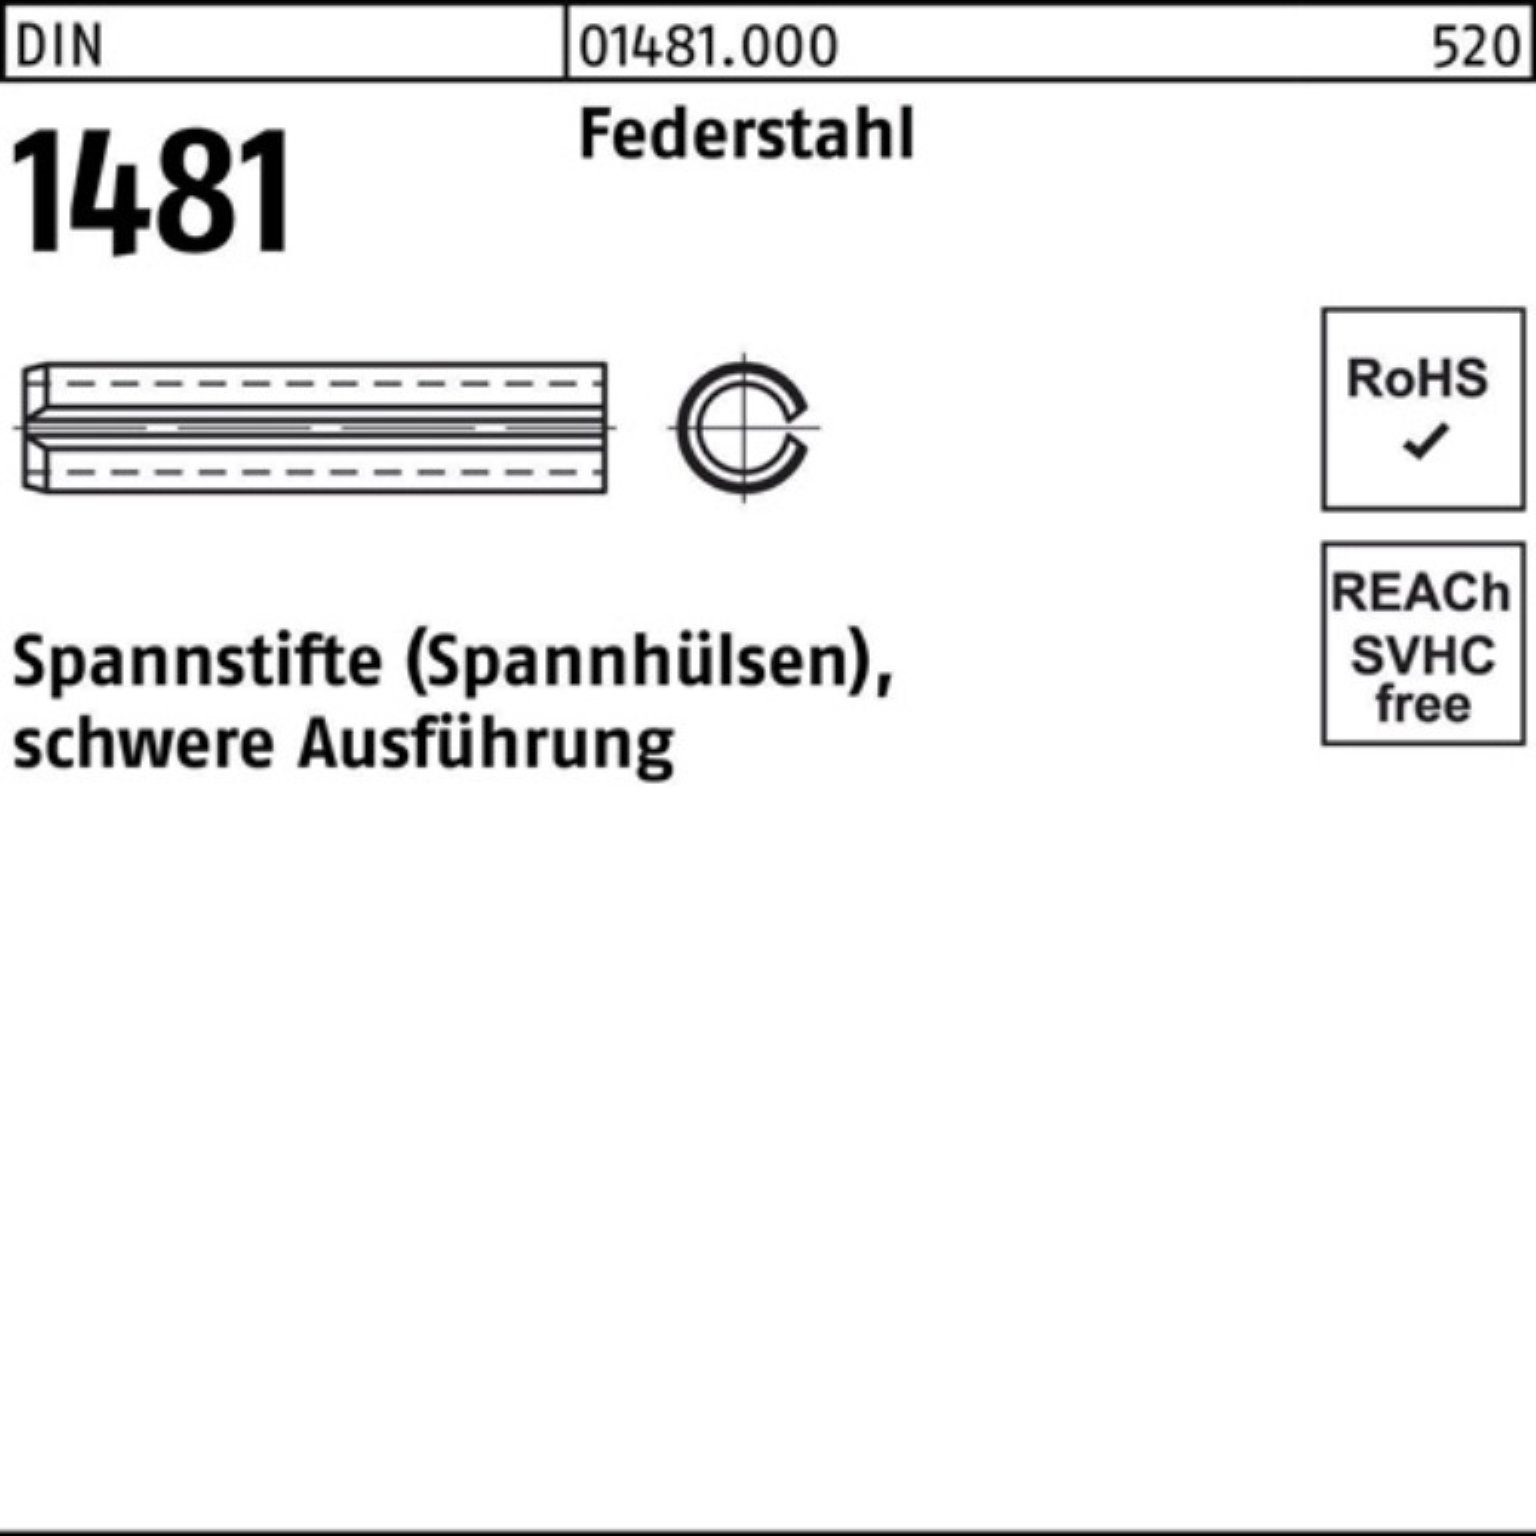 Federstahl Spannstift 1 Ausführung 85 100er Reyher 21x Pack Spannstift 1481 schwere DIN